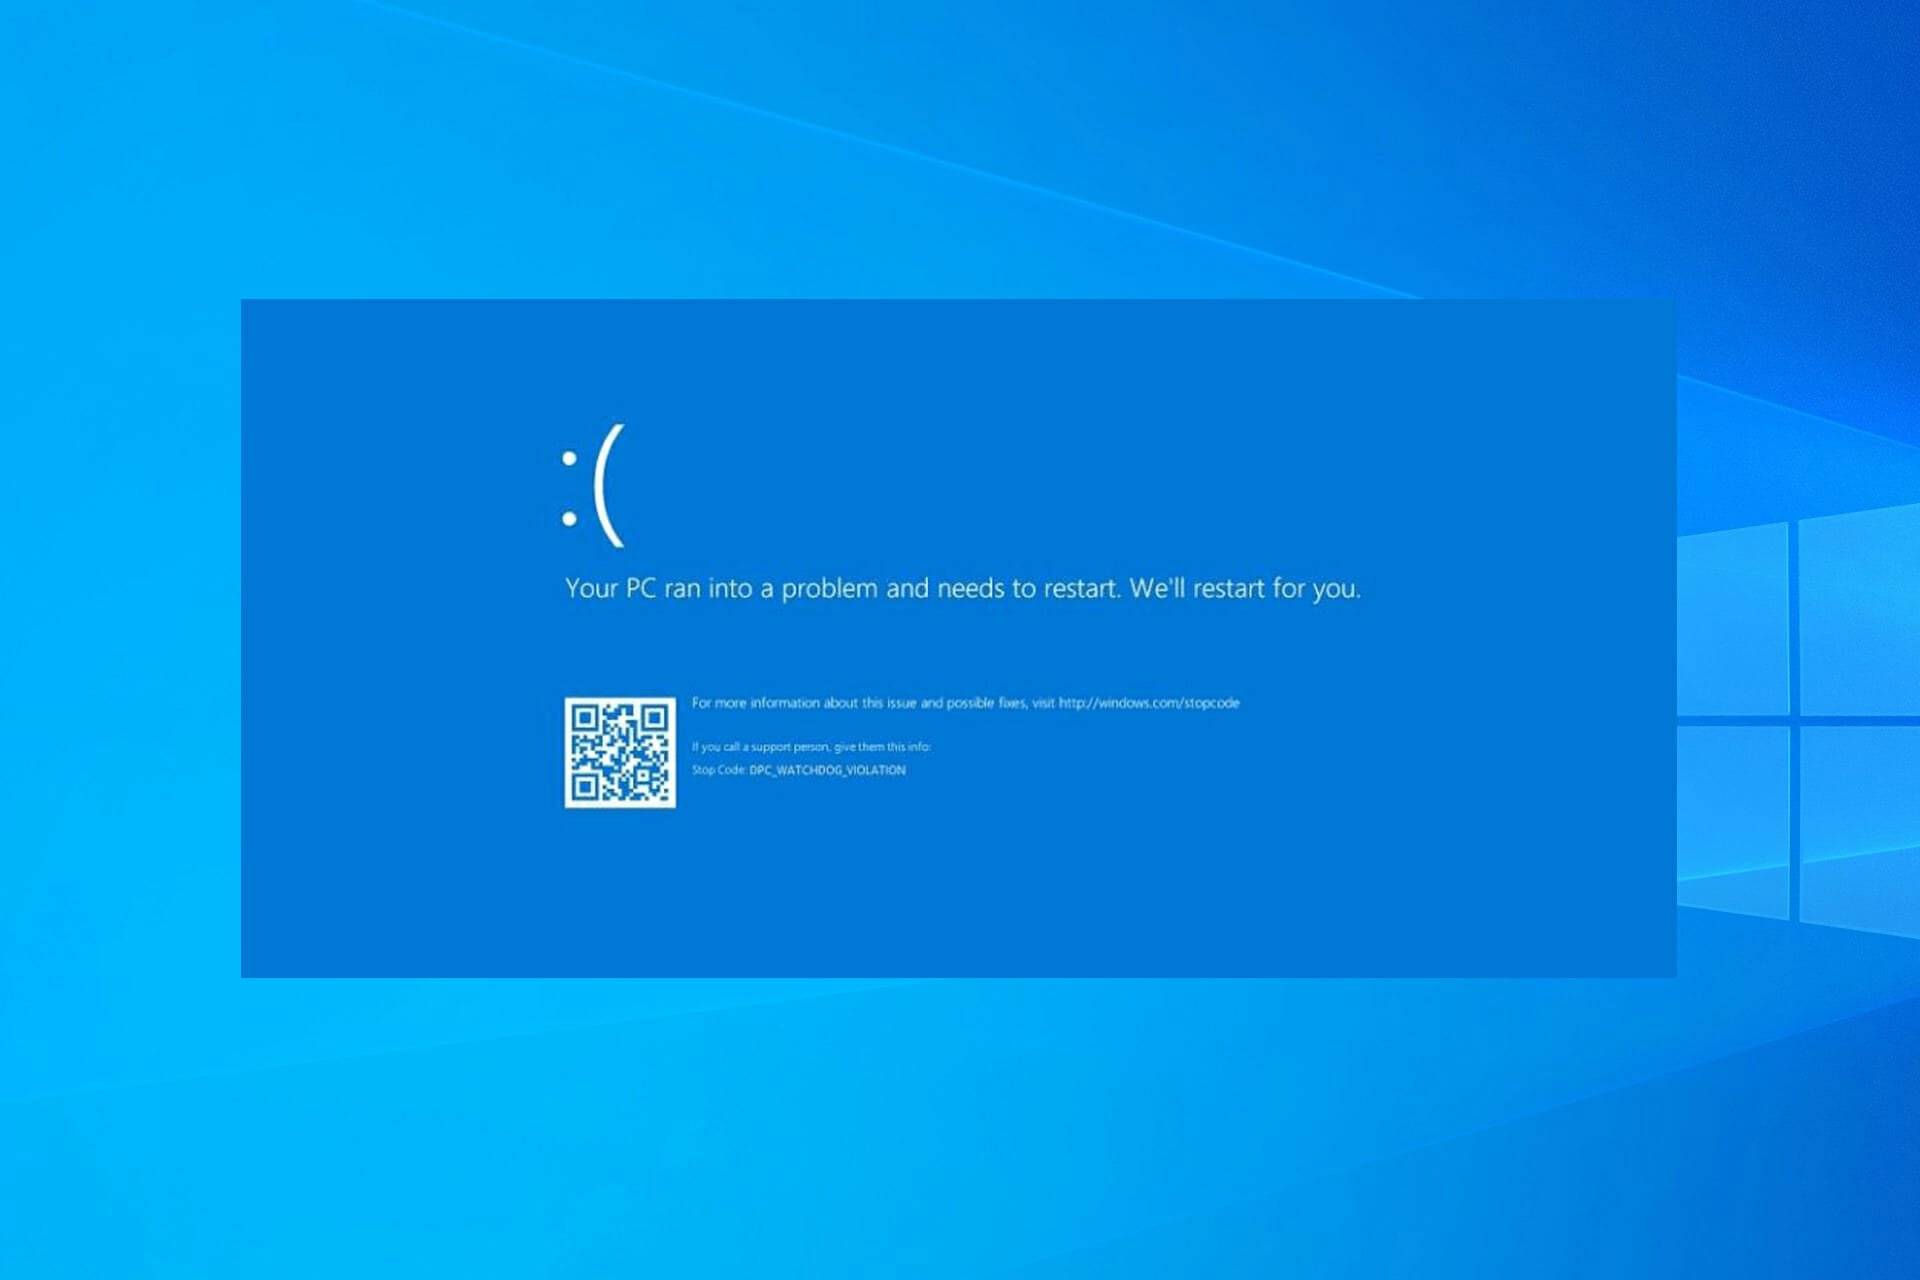 Clock watchdog timeout error on Windows 10